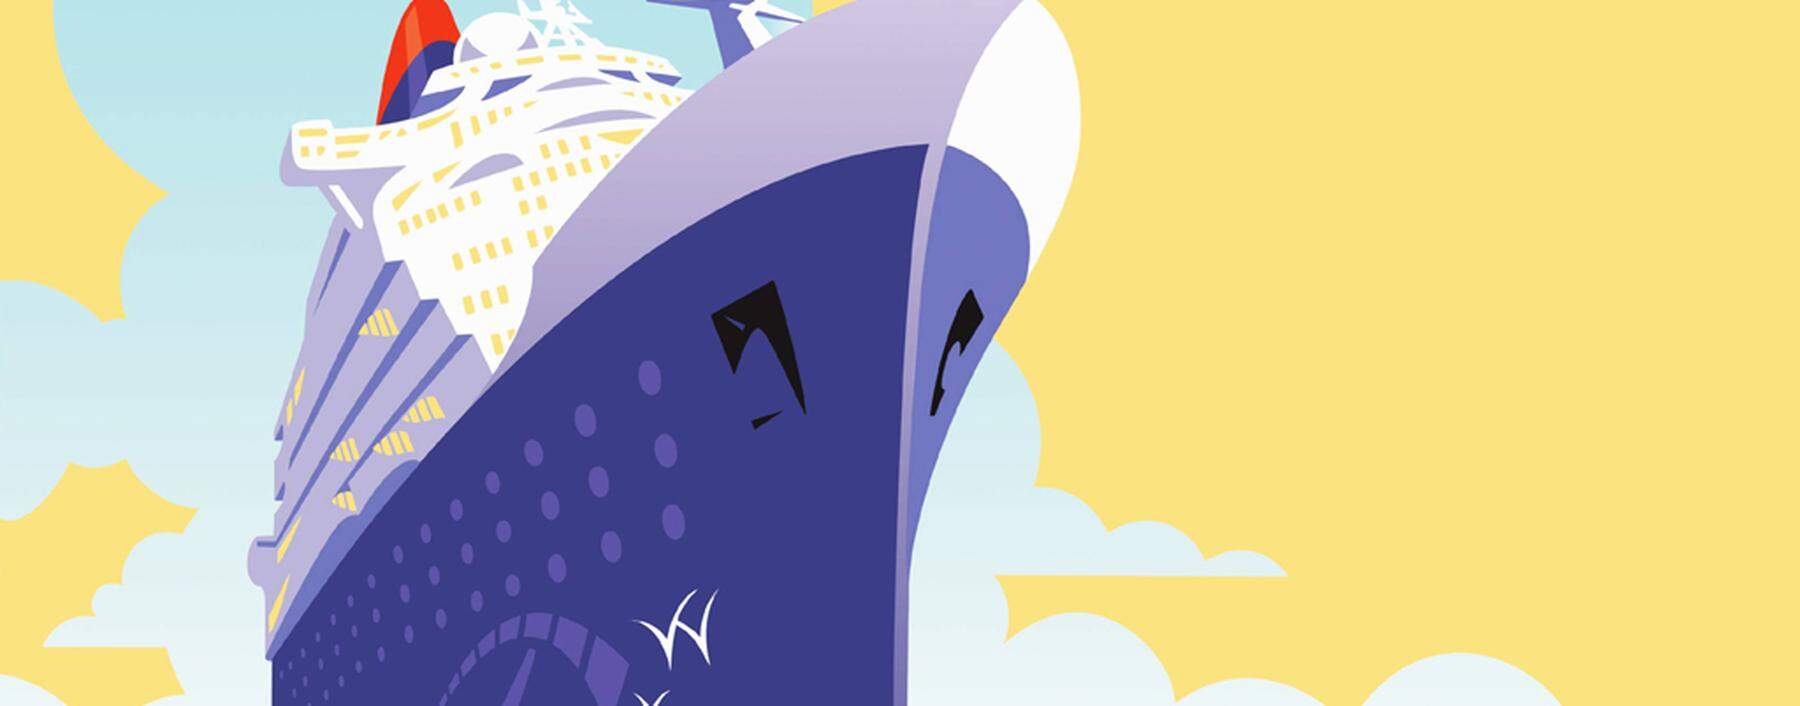 Luxuri�ses Kreuzfahrtschiff f�hrt durch ruhiges Meer PUBLICATIONxINxGERxSUIxAUTxONLY DavidxChestnutt